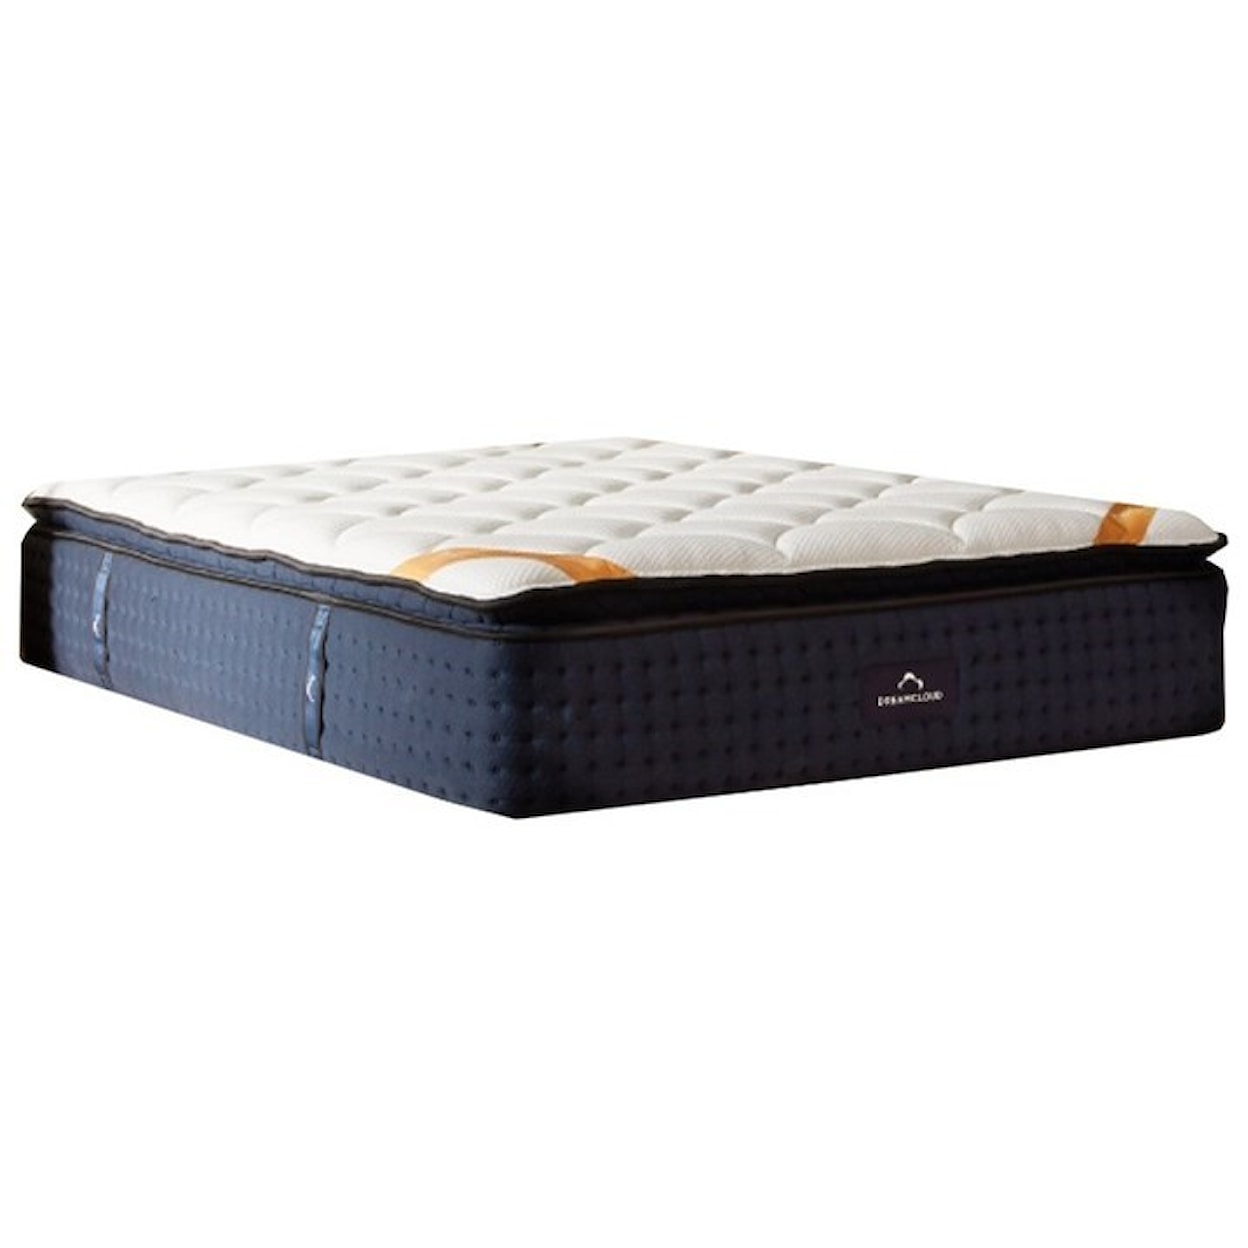 DreamCloud Dream Cloud Premier Rest Pillow Top Queen 16" Hybrid Pillow Top Mattress